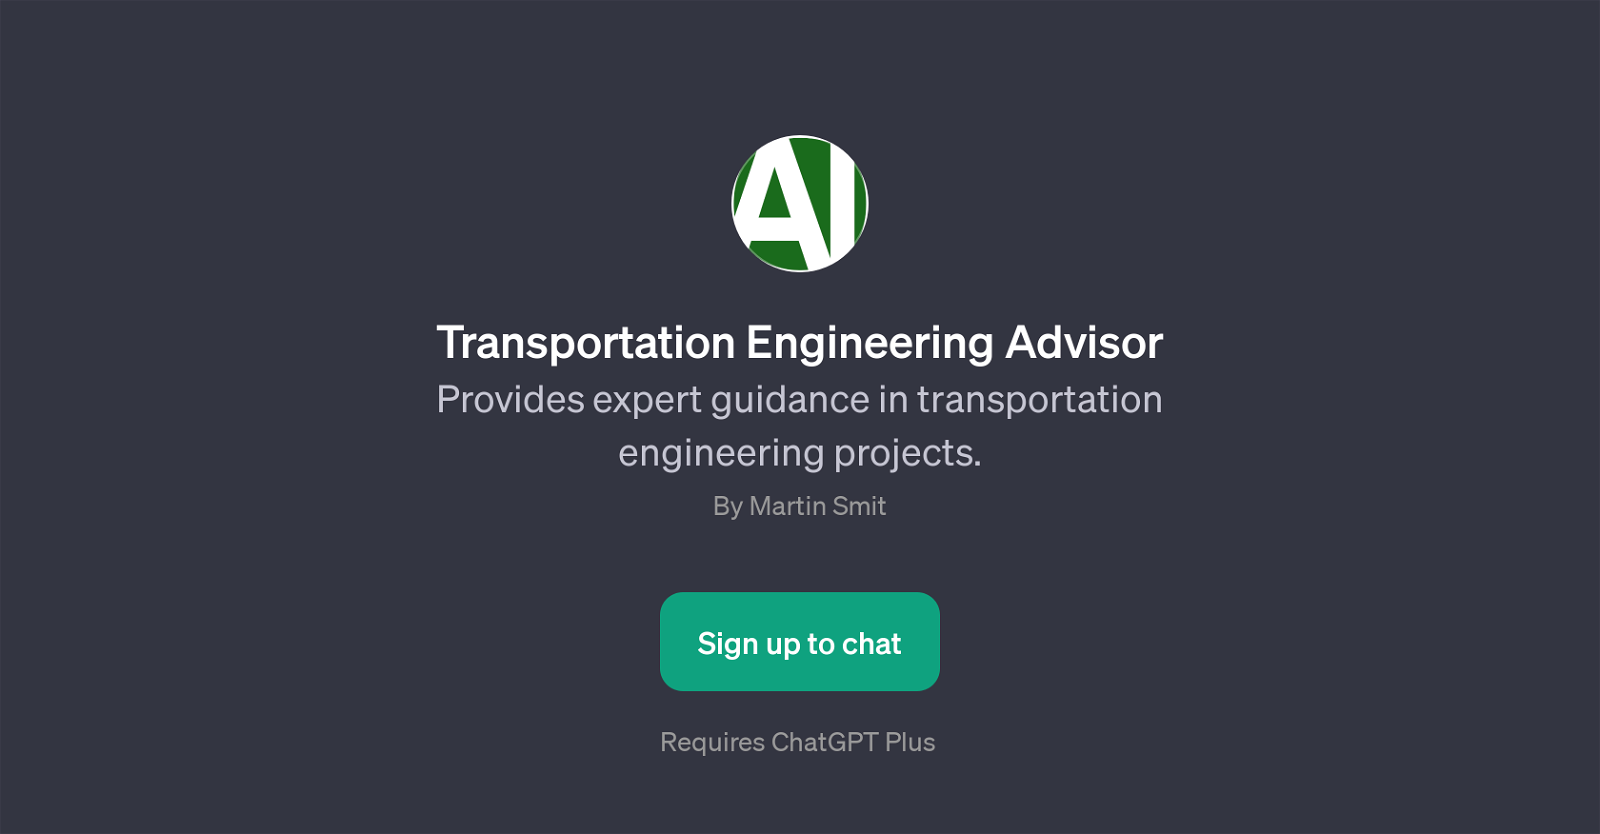 Transportation Engineering Advisor website